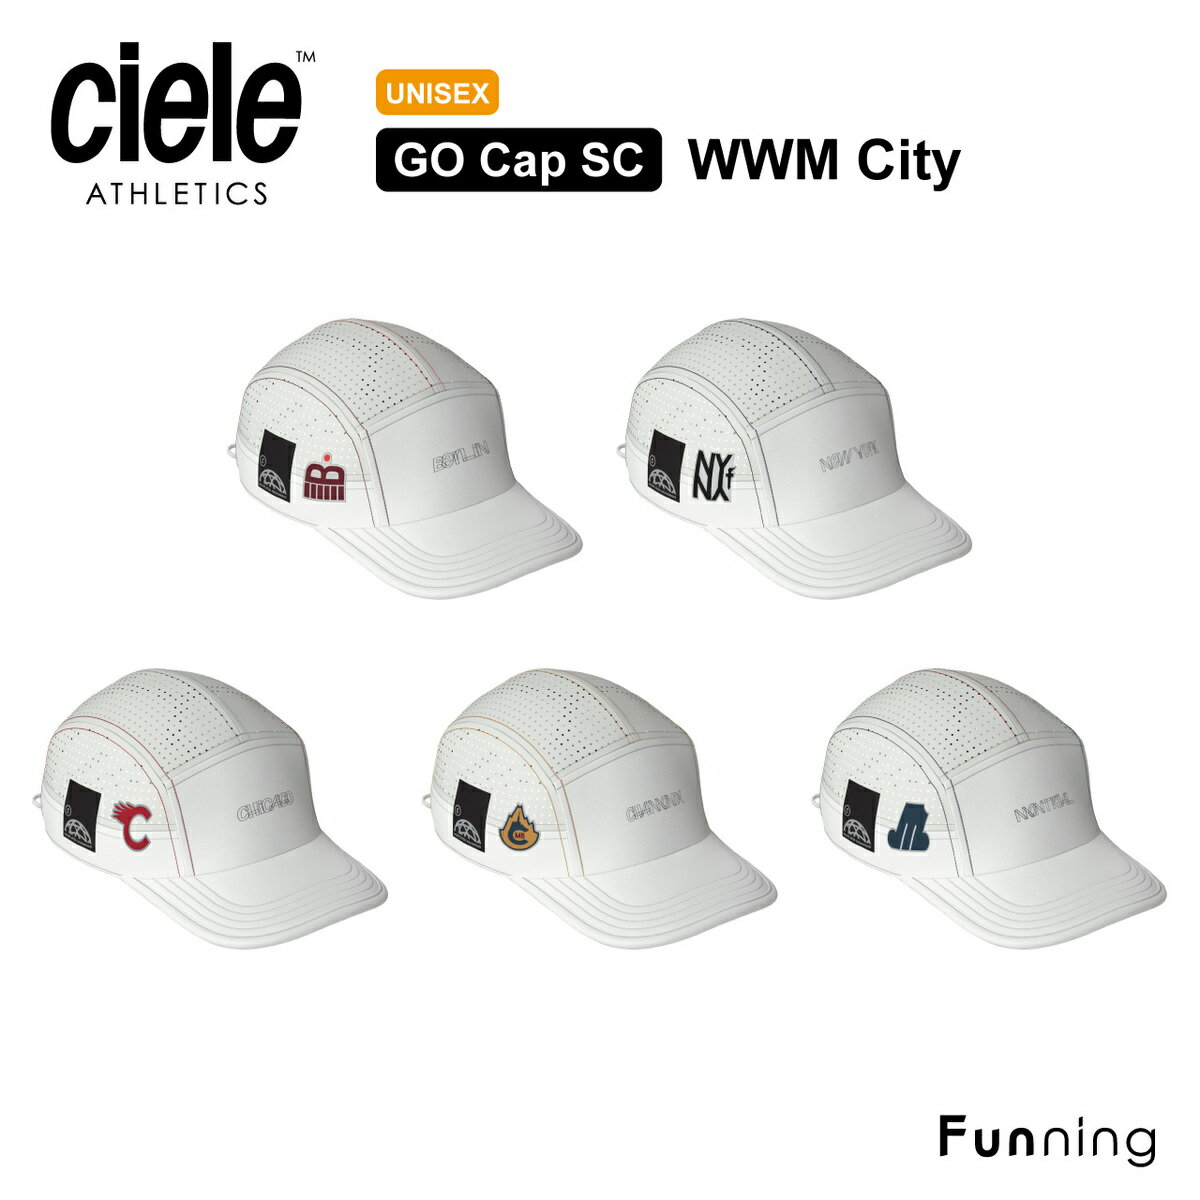 Ciele (シエル) Go Cap Welded SC WWM City ランニングキャップ スポーツキャップ 帽子 ユニセックス メンズ レディース マラソン 自転車 バイク トライアスロン 反射ラベル搭載 紫外線カット 洗濯可能 軽量 速乾性 プレゼント